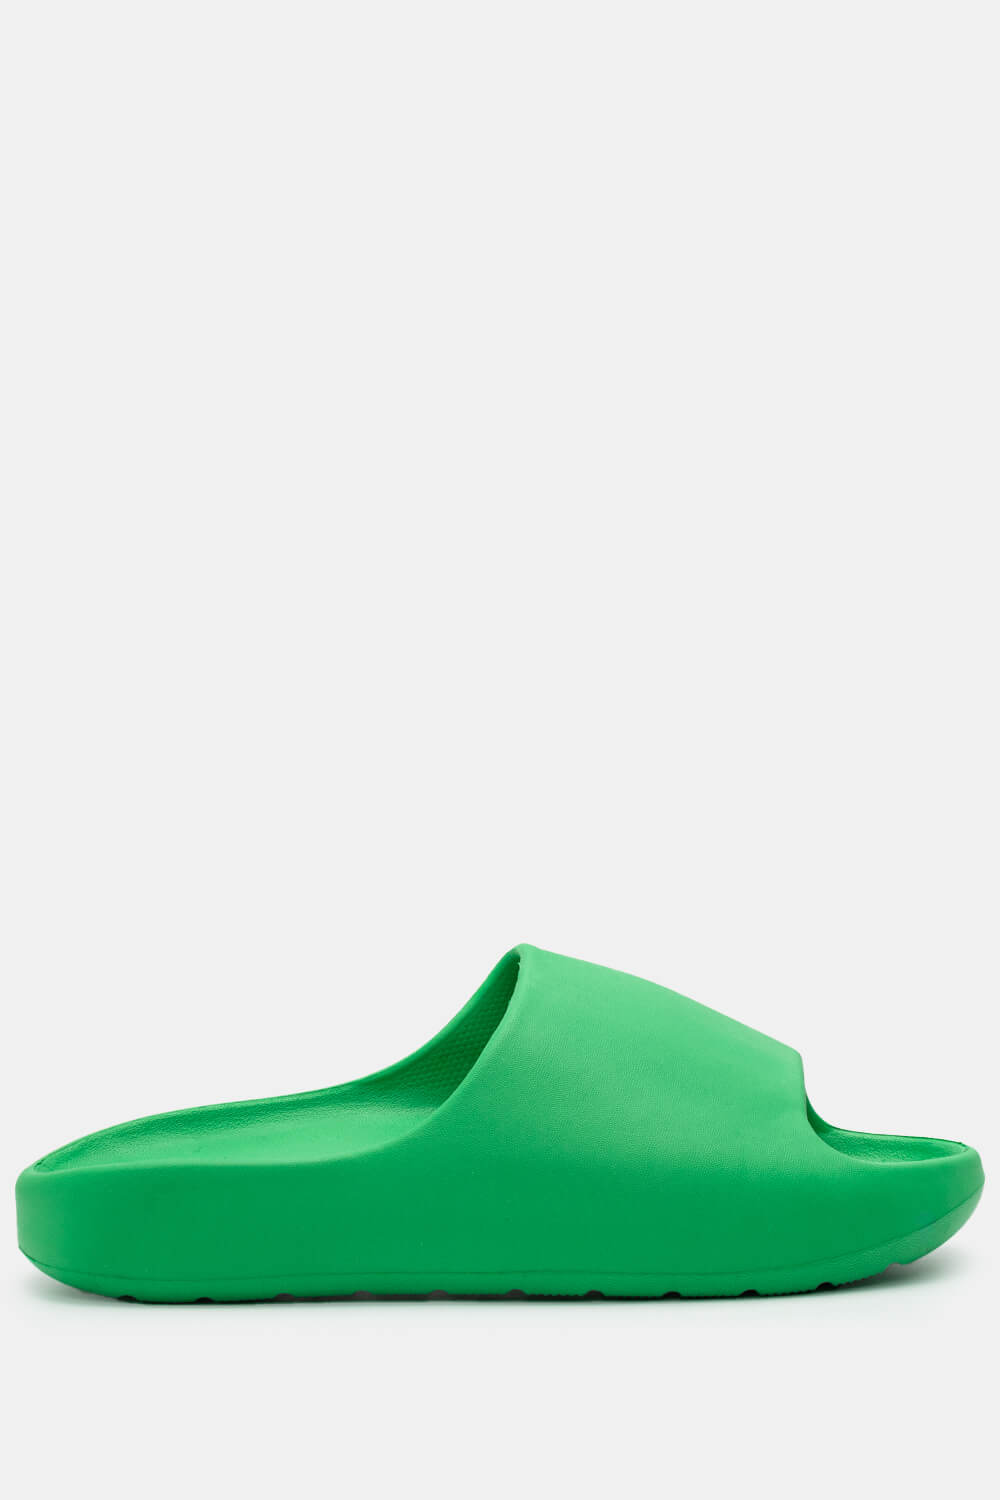 Παντόφλες Δίσολες Μονόχρωμες - Πράσινο ΠΑΠΟΥΤΣΙΑ > Jelly Shoes